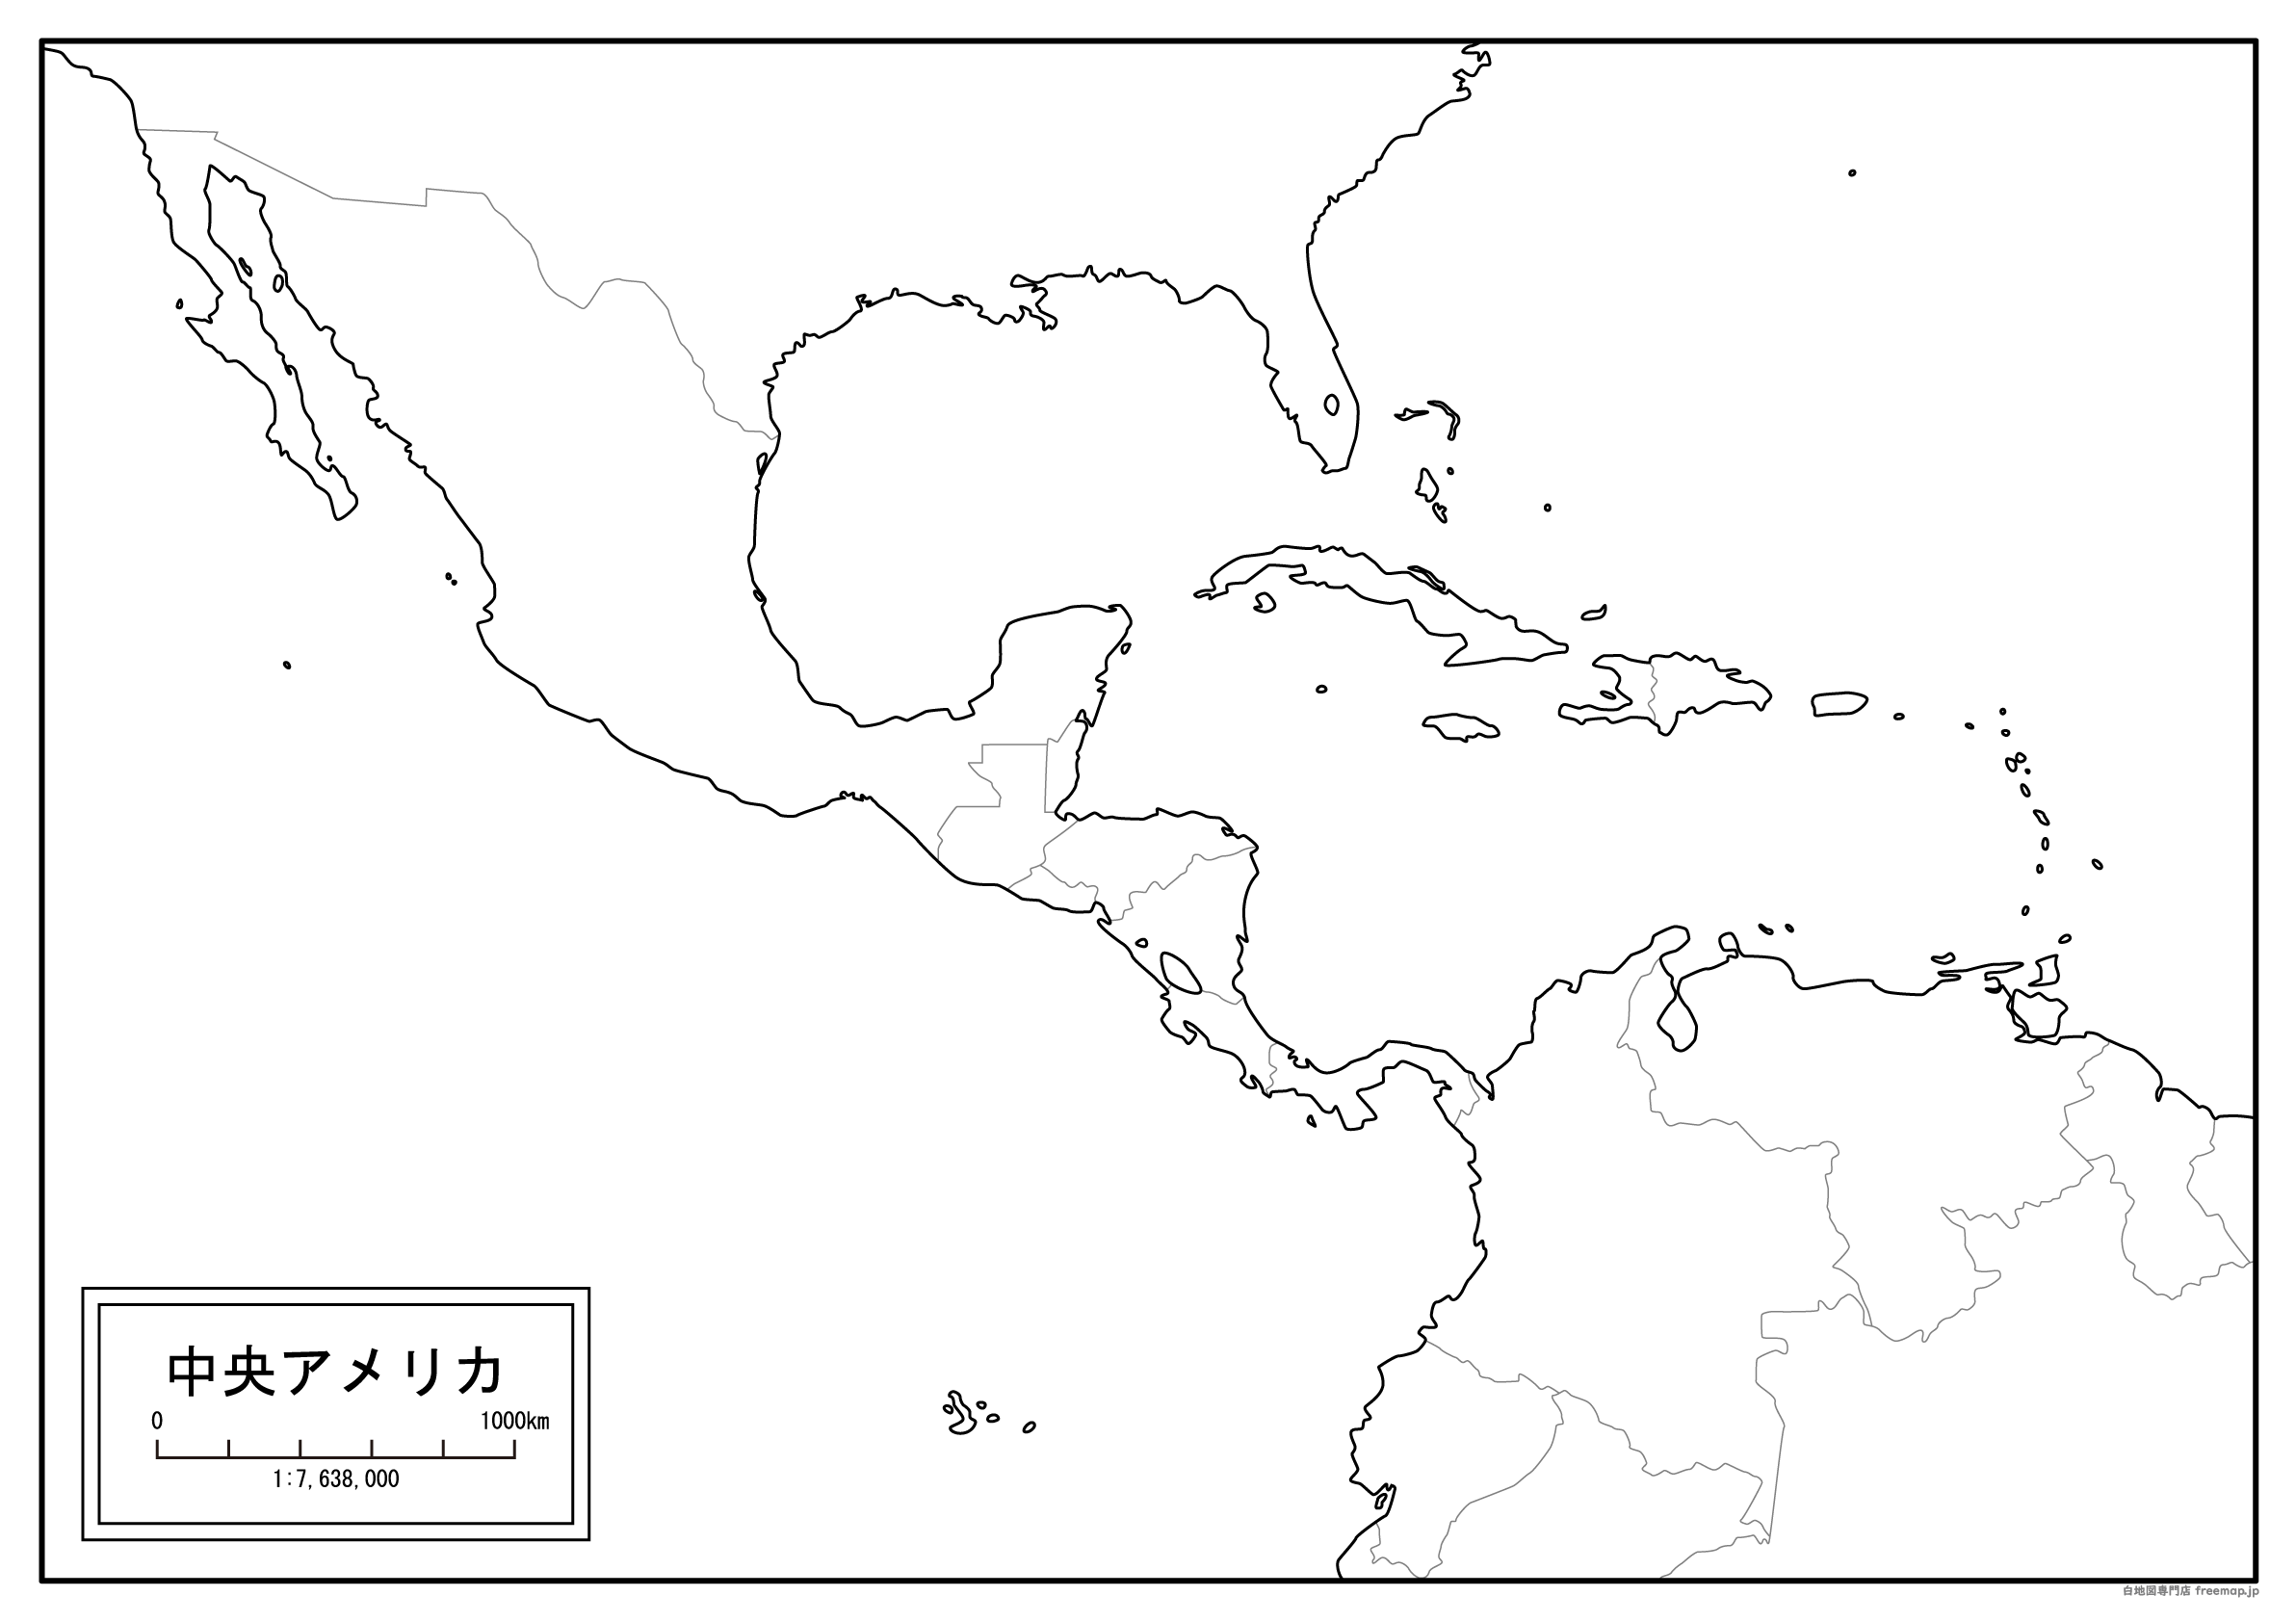 中央アメリカ地域全図のサムネイル